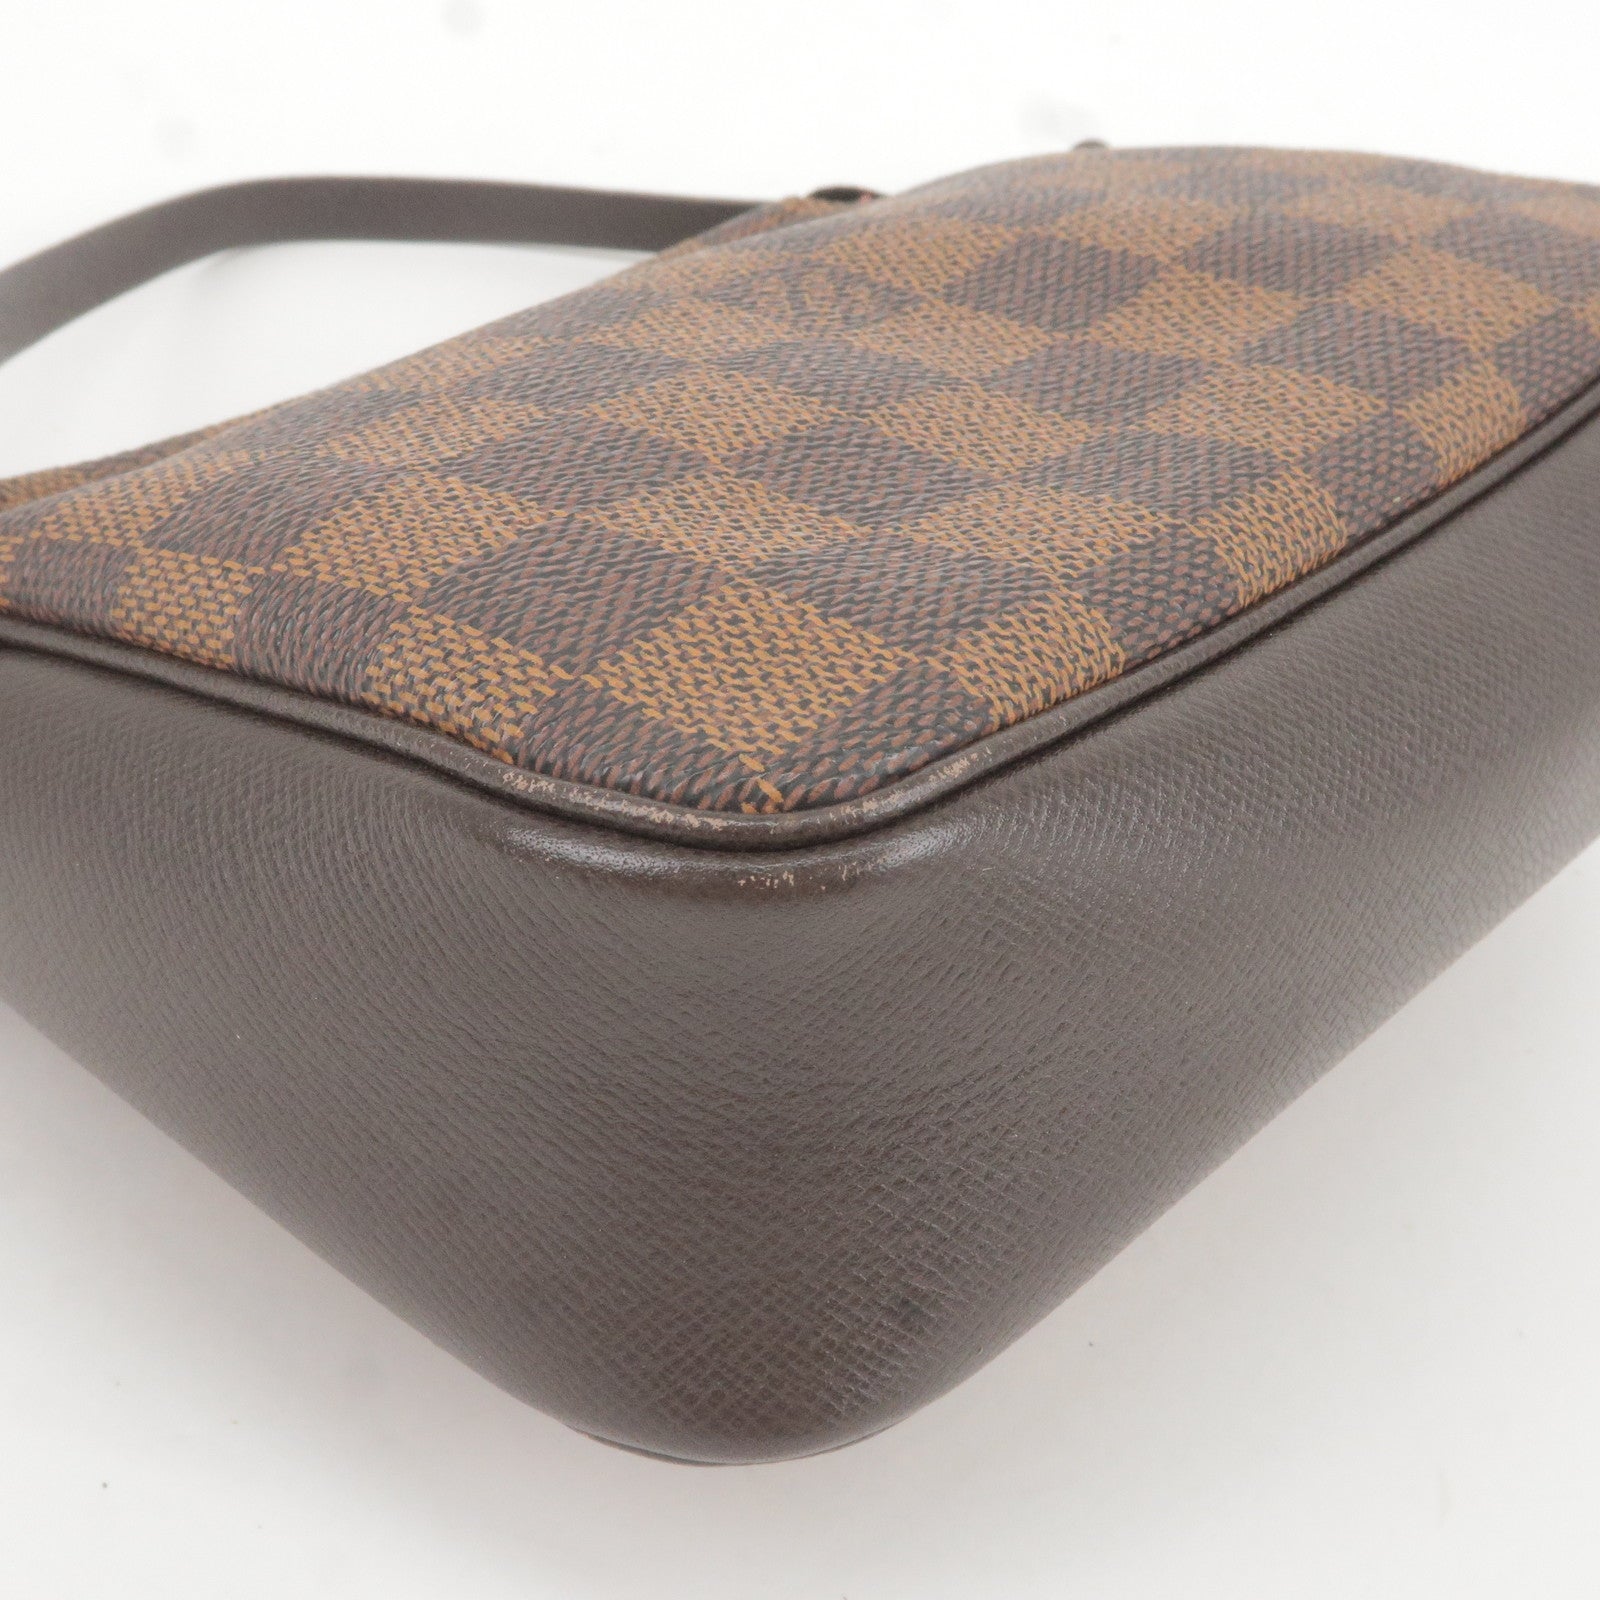 Louis Vuitton Pochette Marelle Brown Canvas Clutch Bag (Pre-Owned